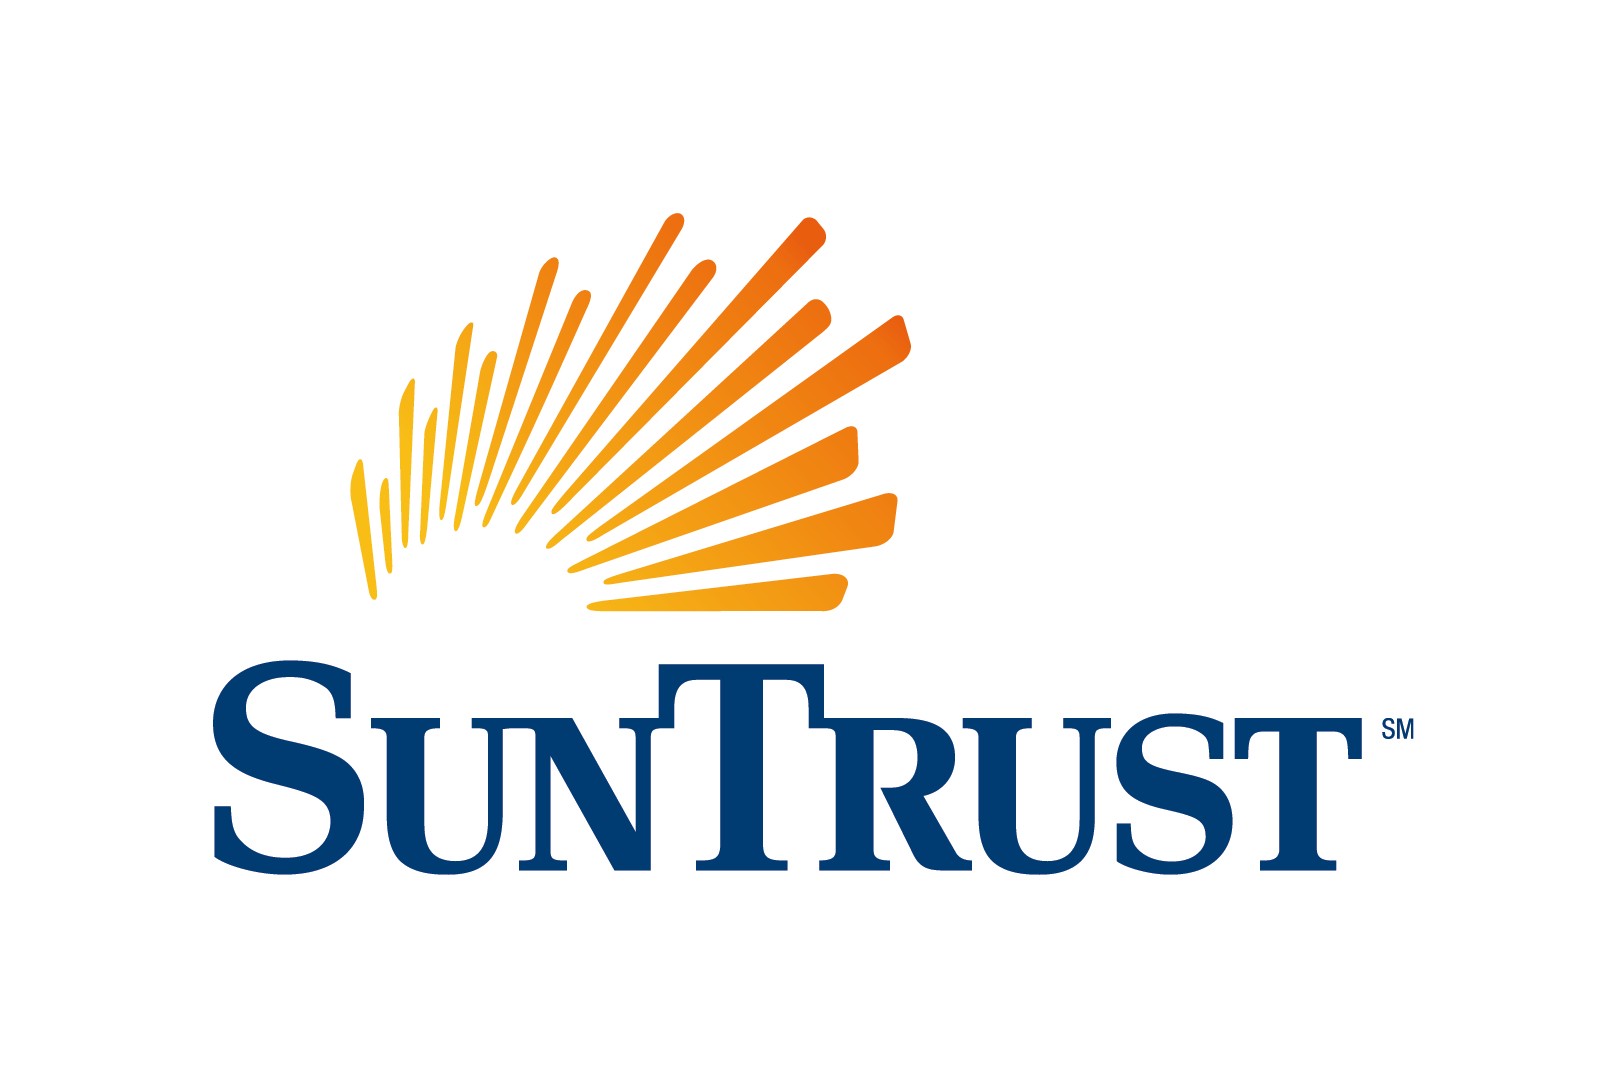 Sun Trust sun logo